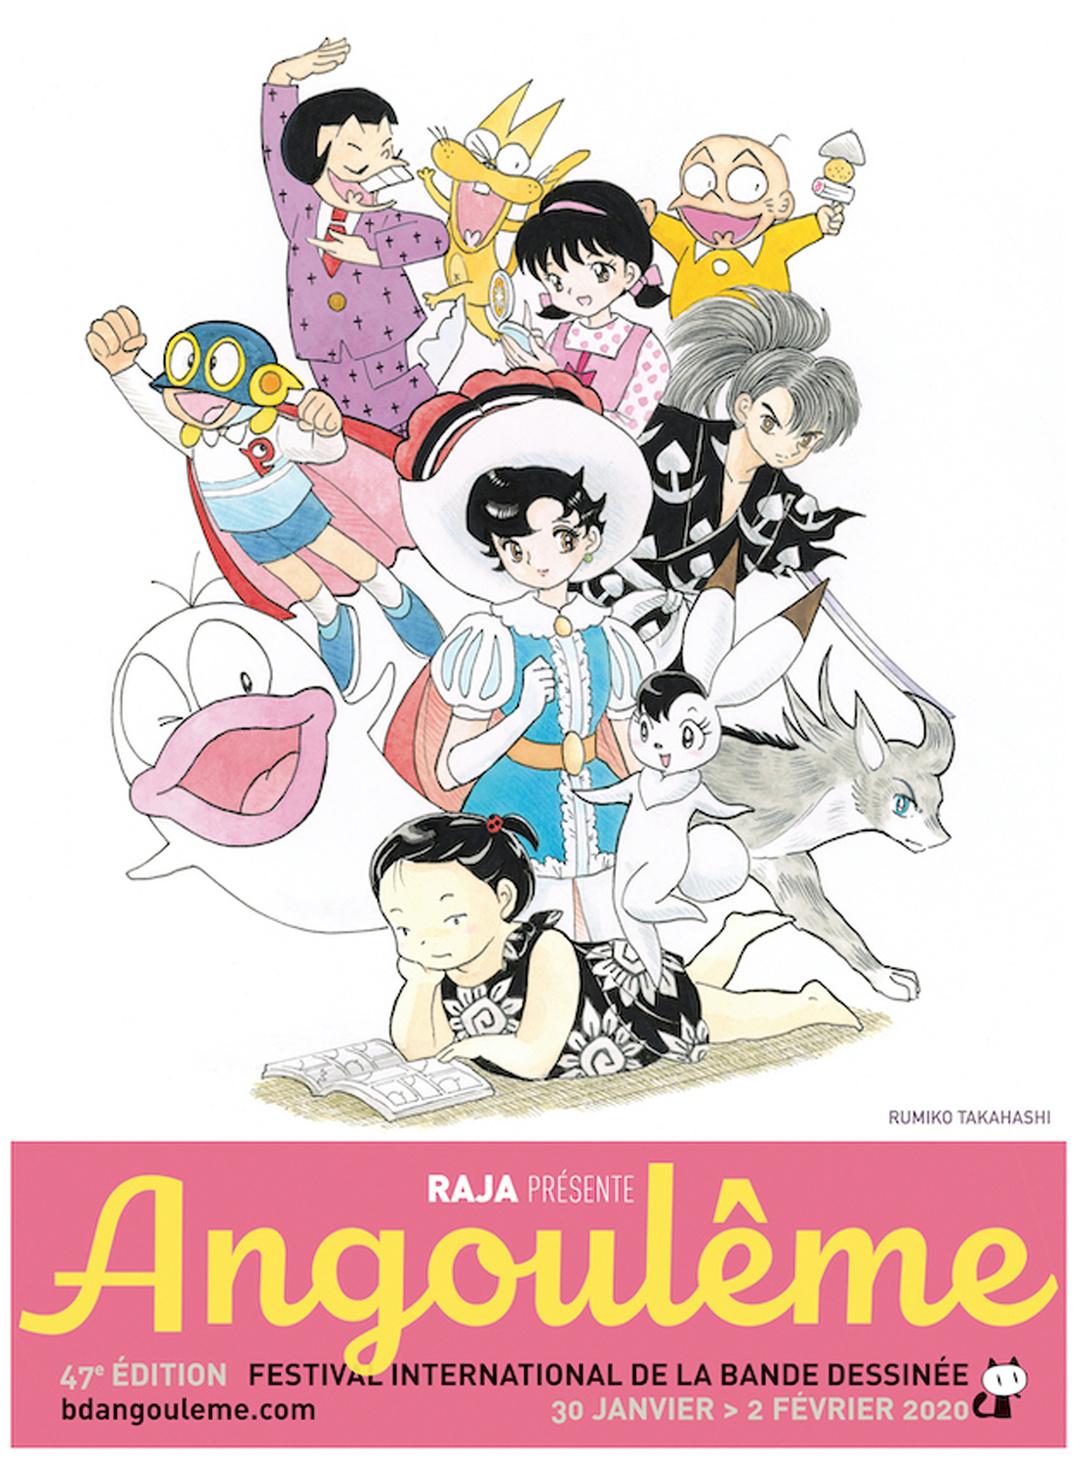 Een van de affiches voor het stripfestival van Angoulême 2020.